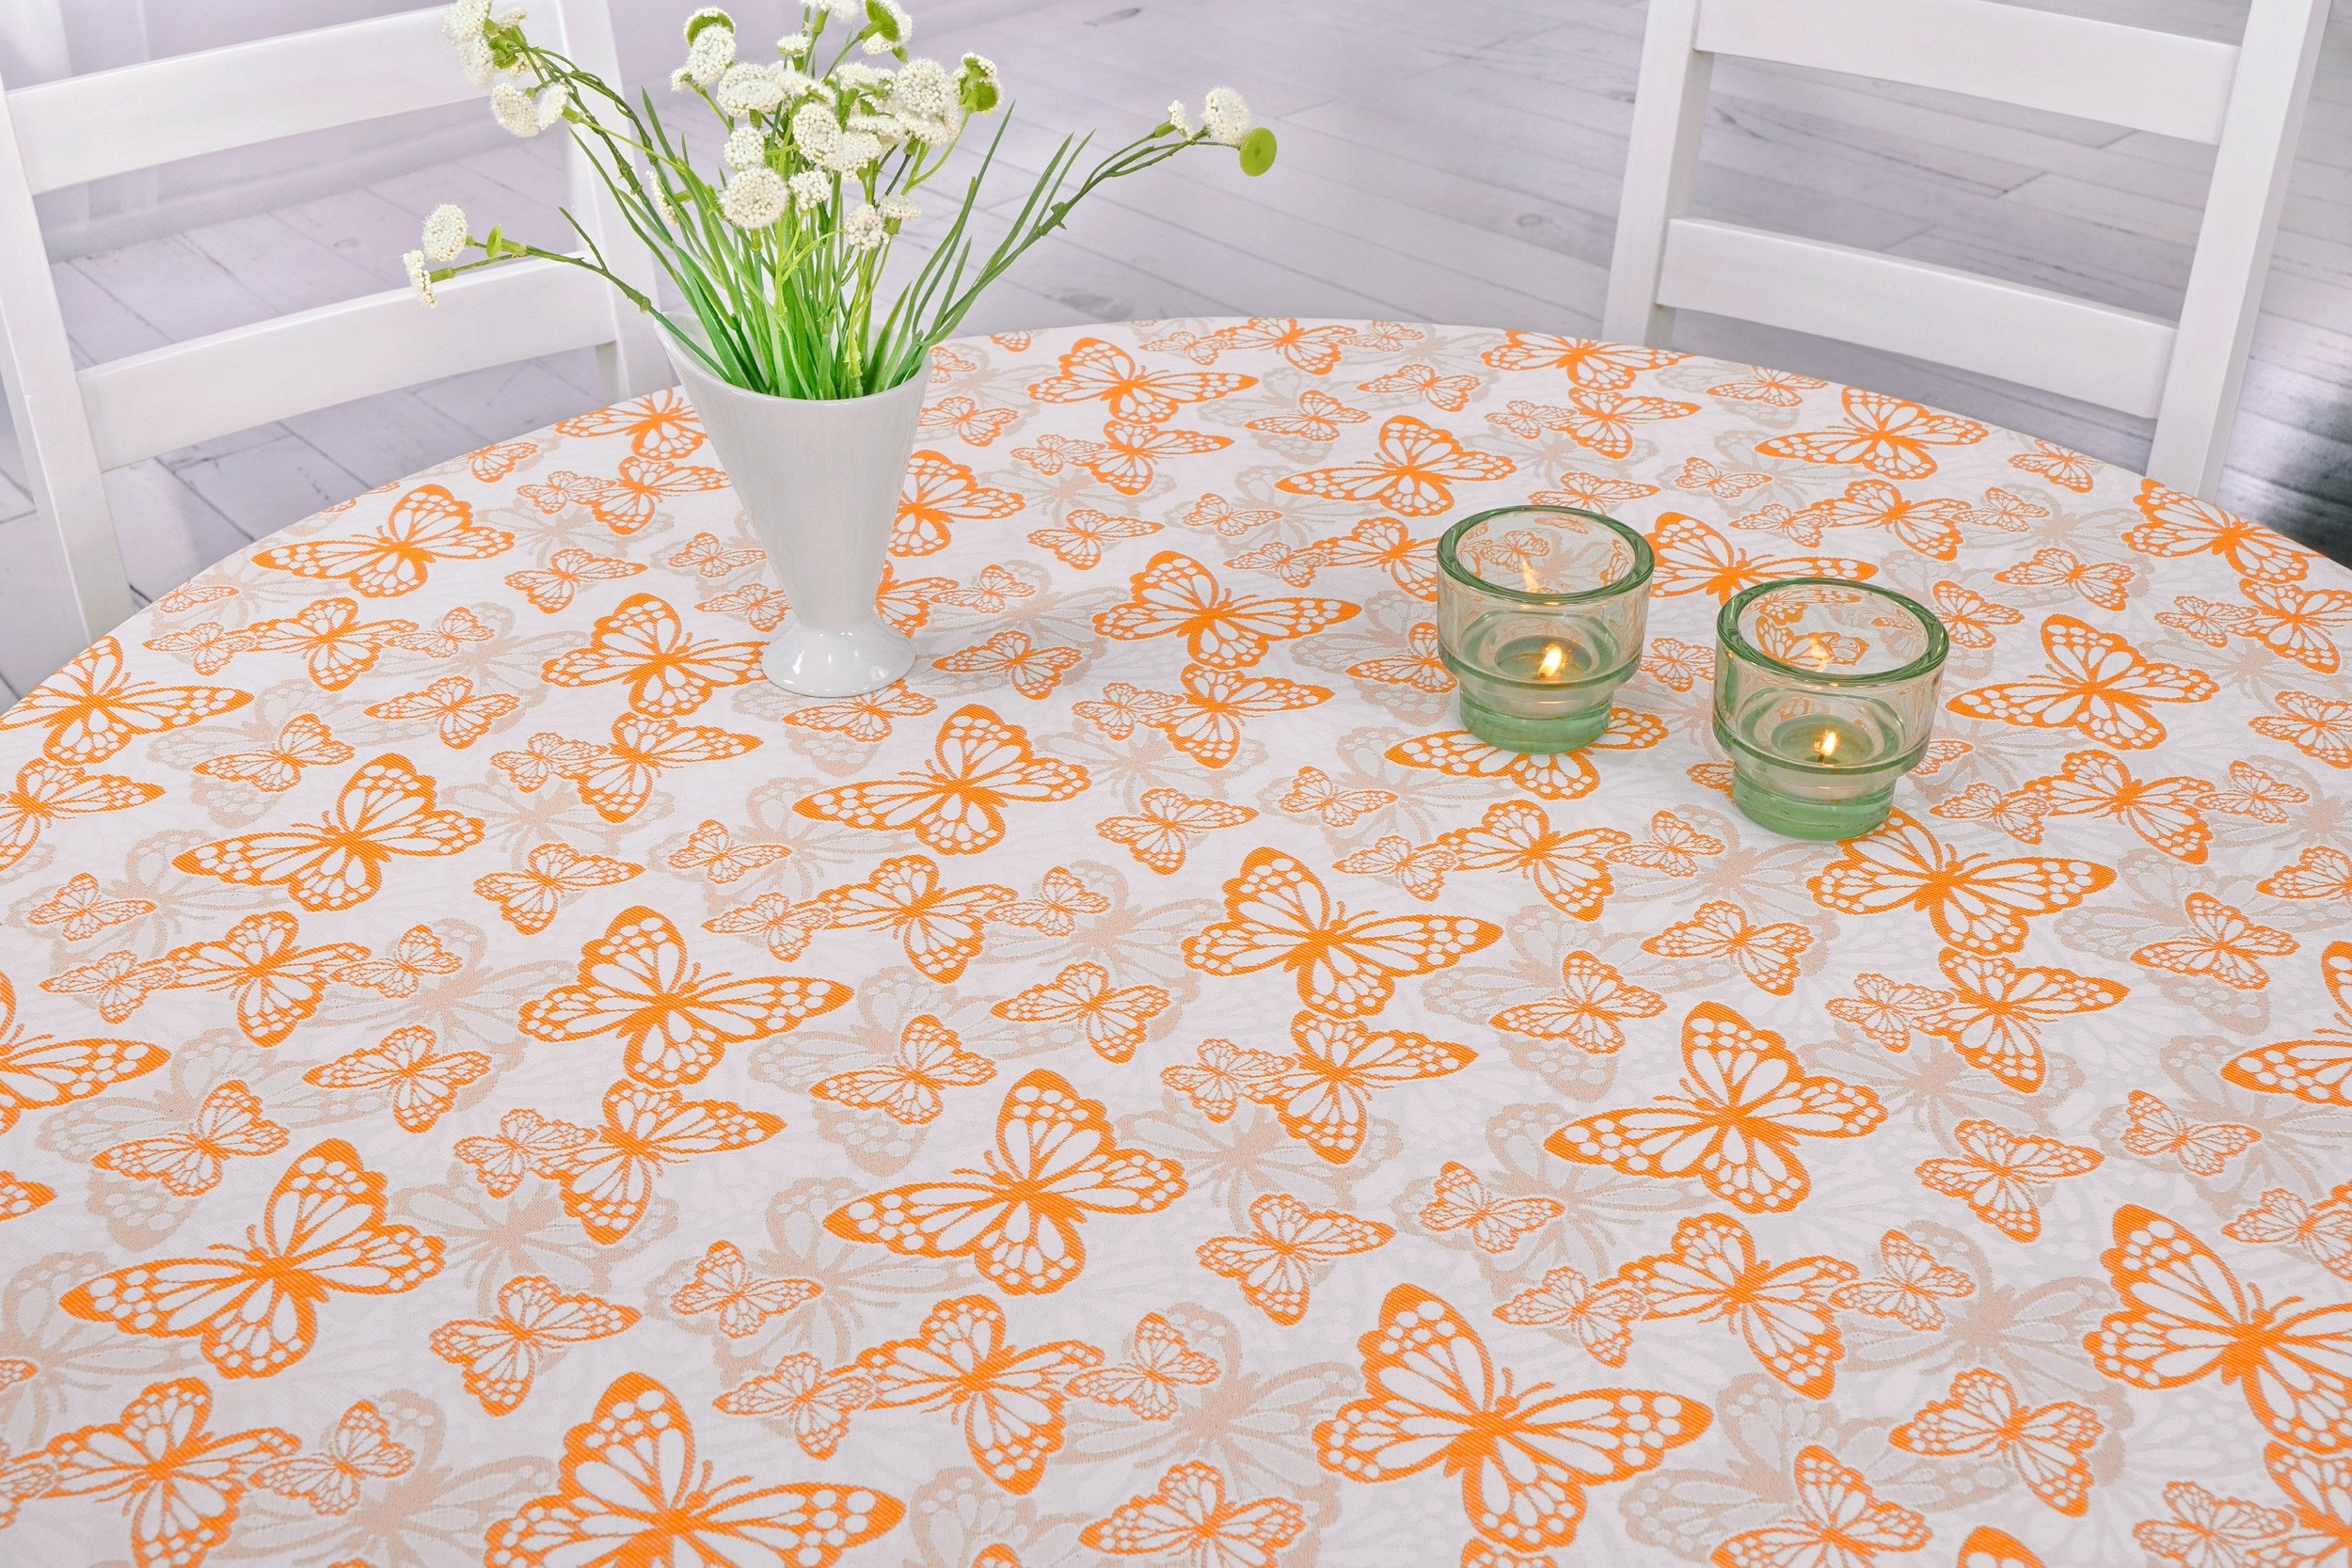 Fleckgeschützte Tischdecke Weiß Orange Muster Springtime Breite 120 cm OVAL